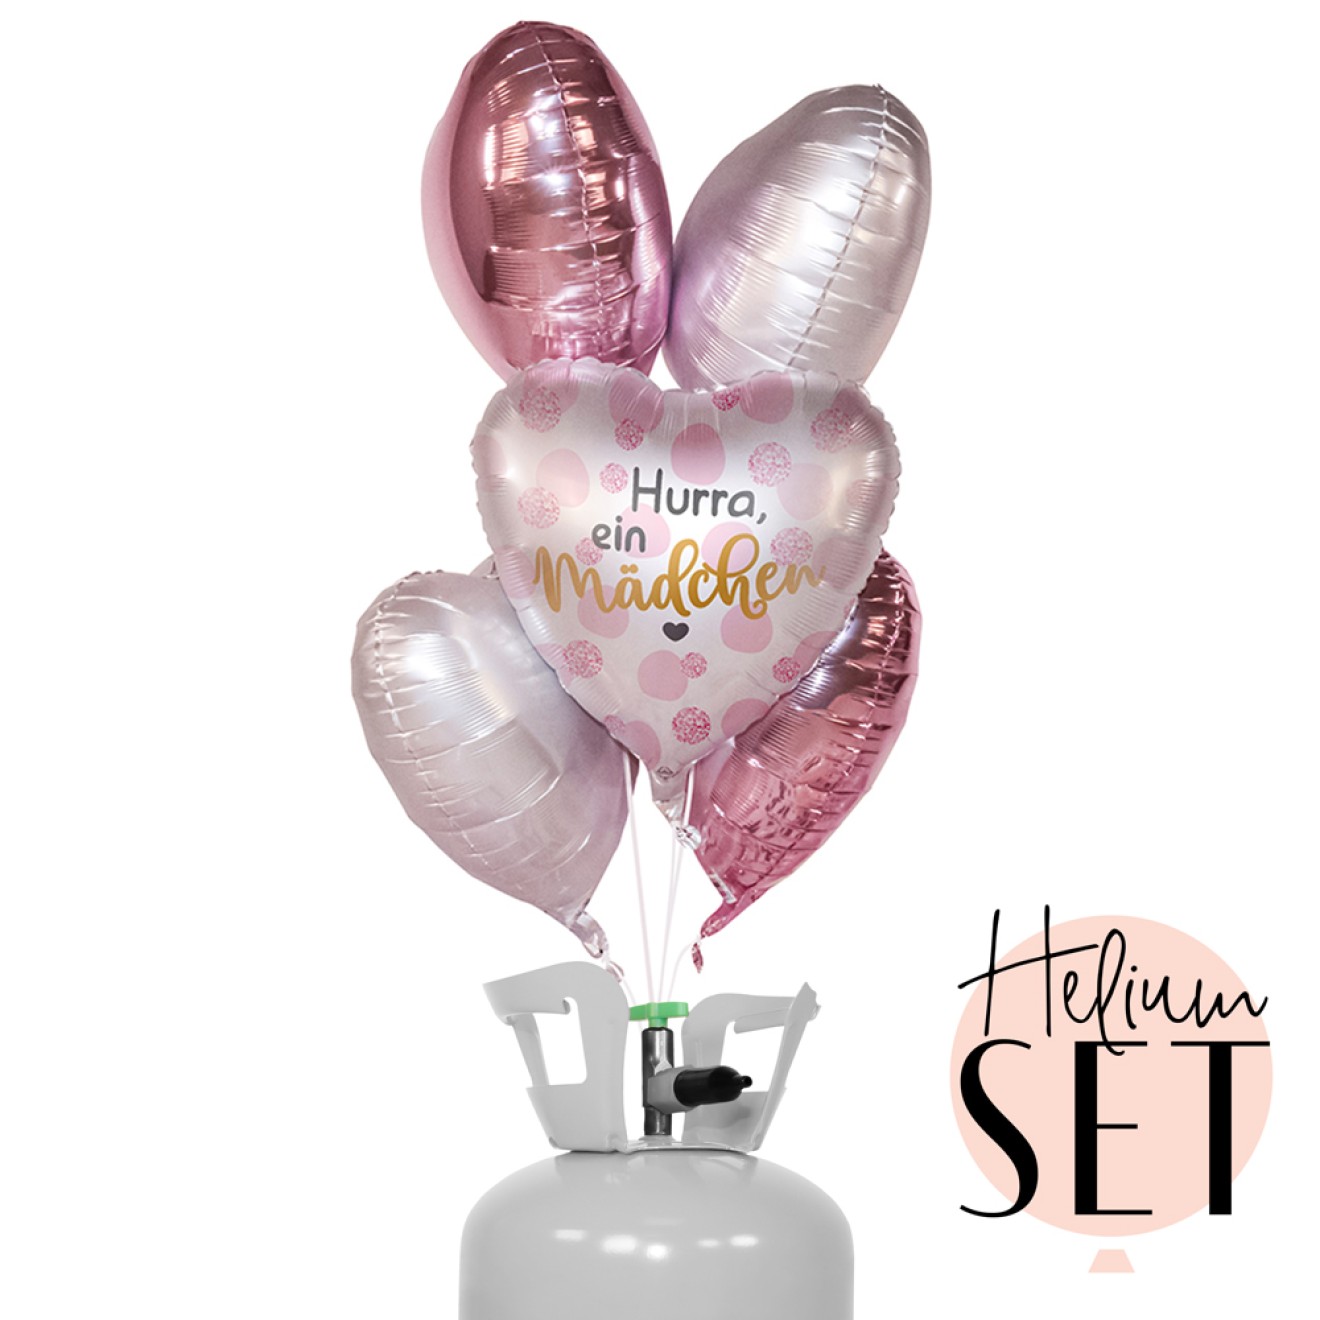 Helium Set - Hurra, ein Mädchen